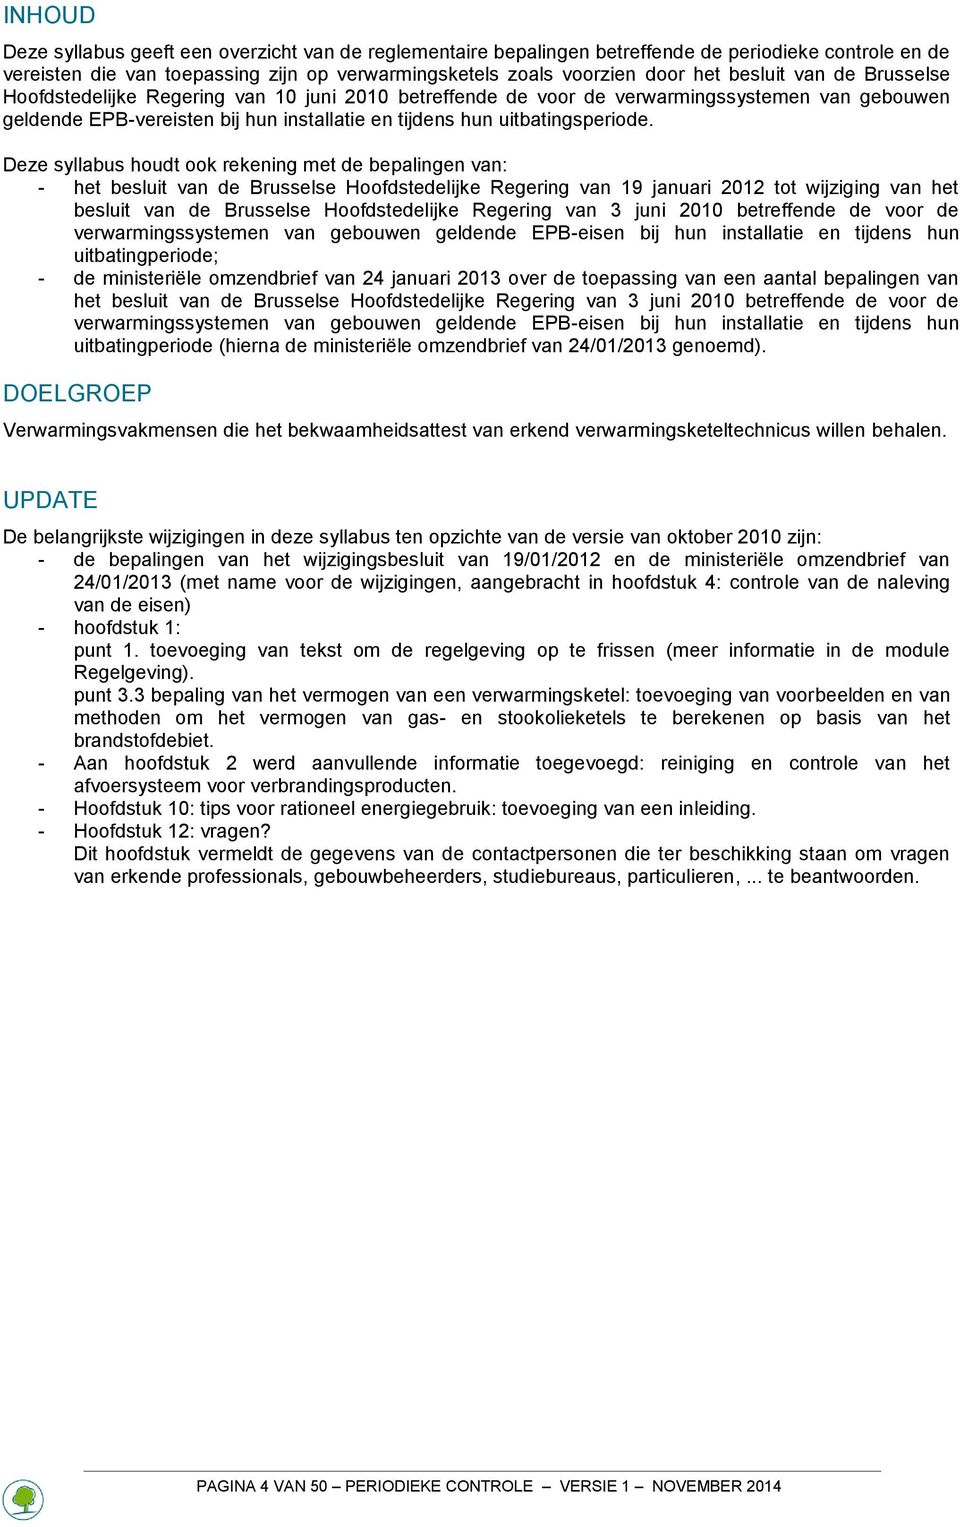 Deze syllabus houdt ook rekening met de bepalingen van: - het besluit van de Brusselse Hoofdstedelijke Regering van 19 januari 2012 tot wijziging van het besluit van de Brusselse Hoofdstedelijke